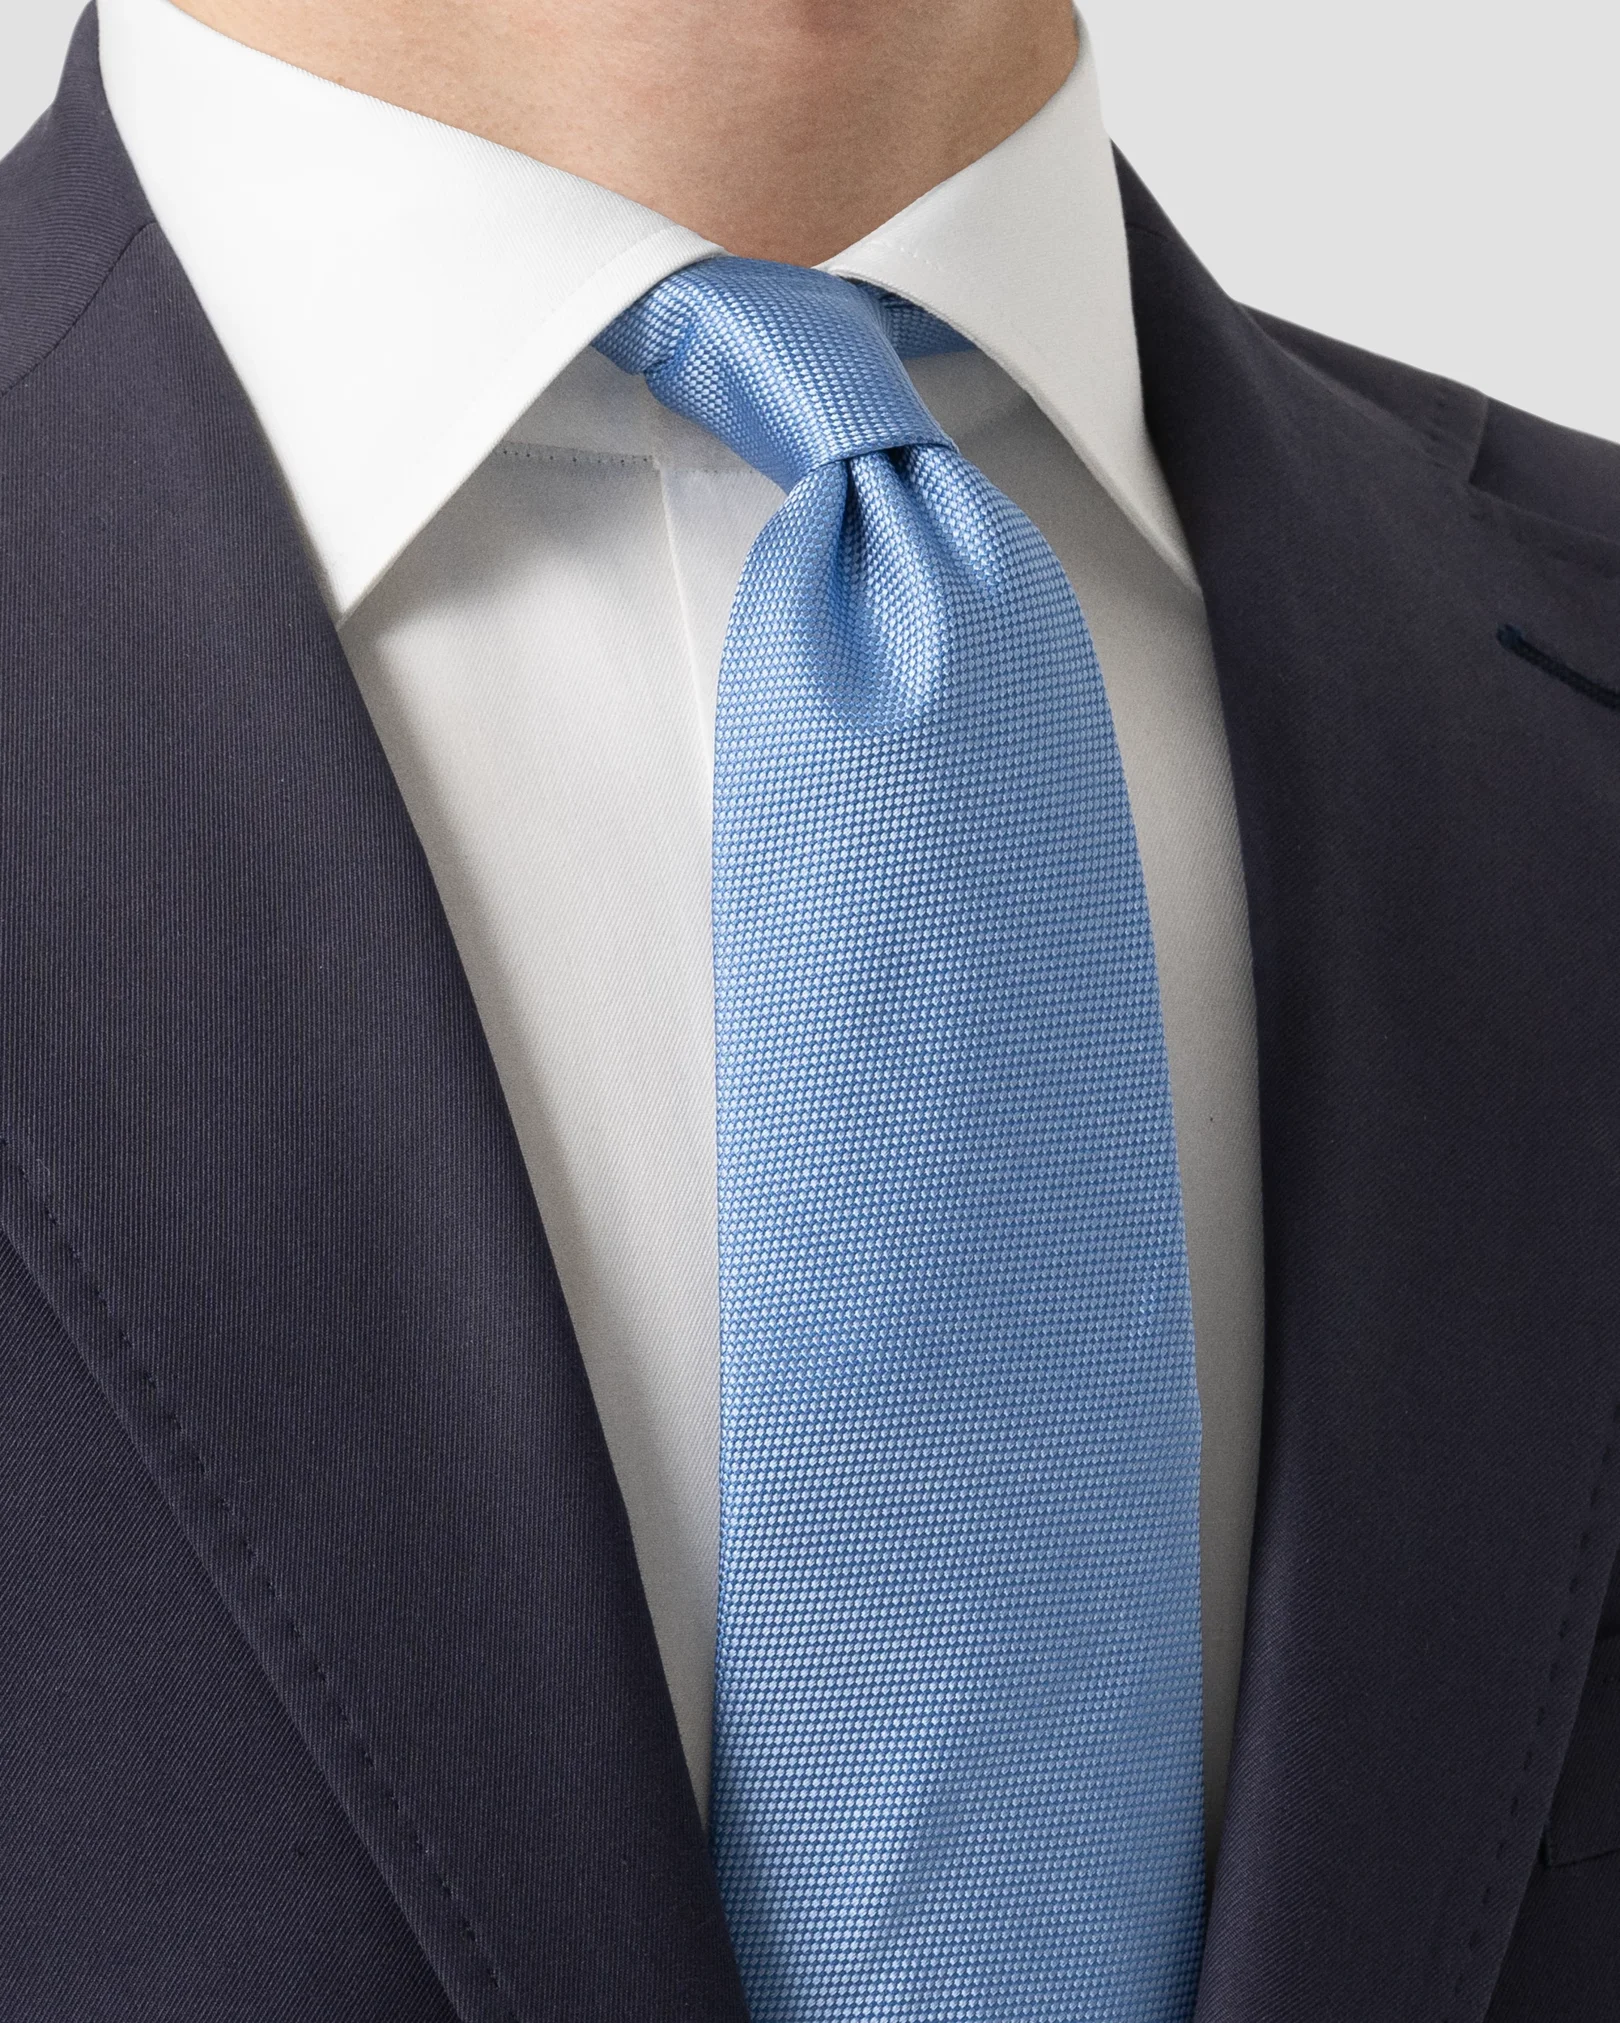 Eton - blue basket weave tie